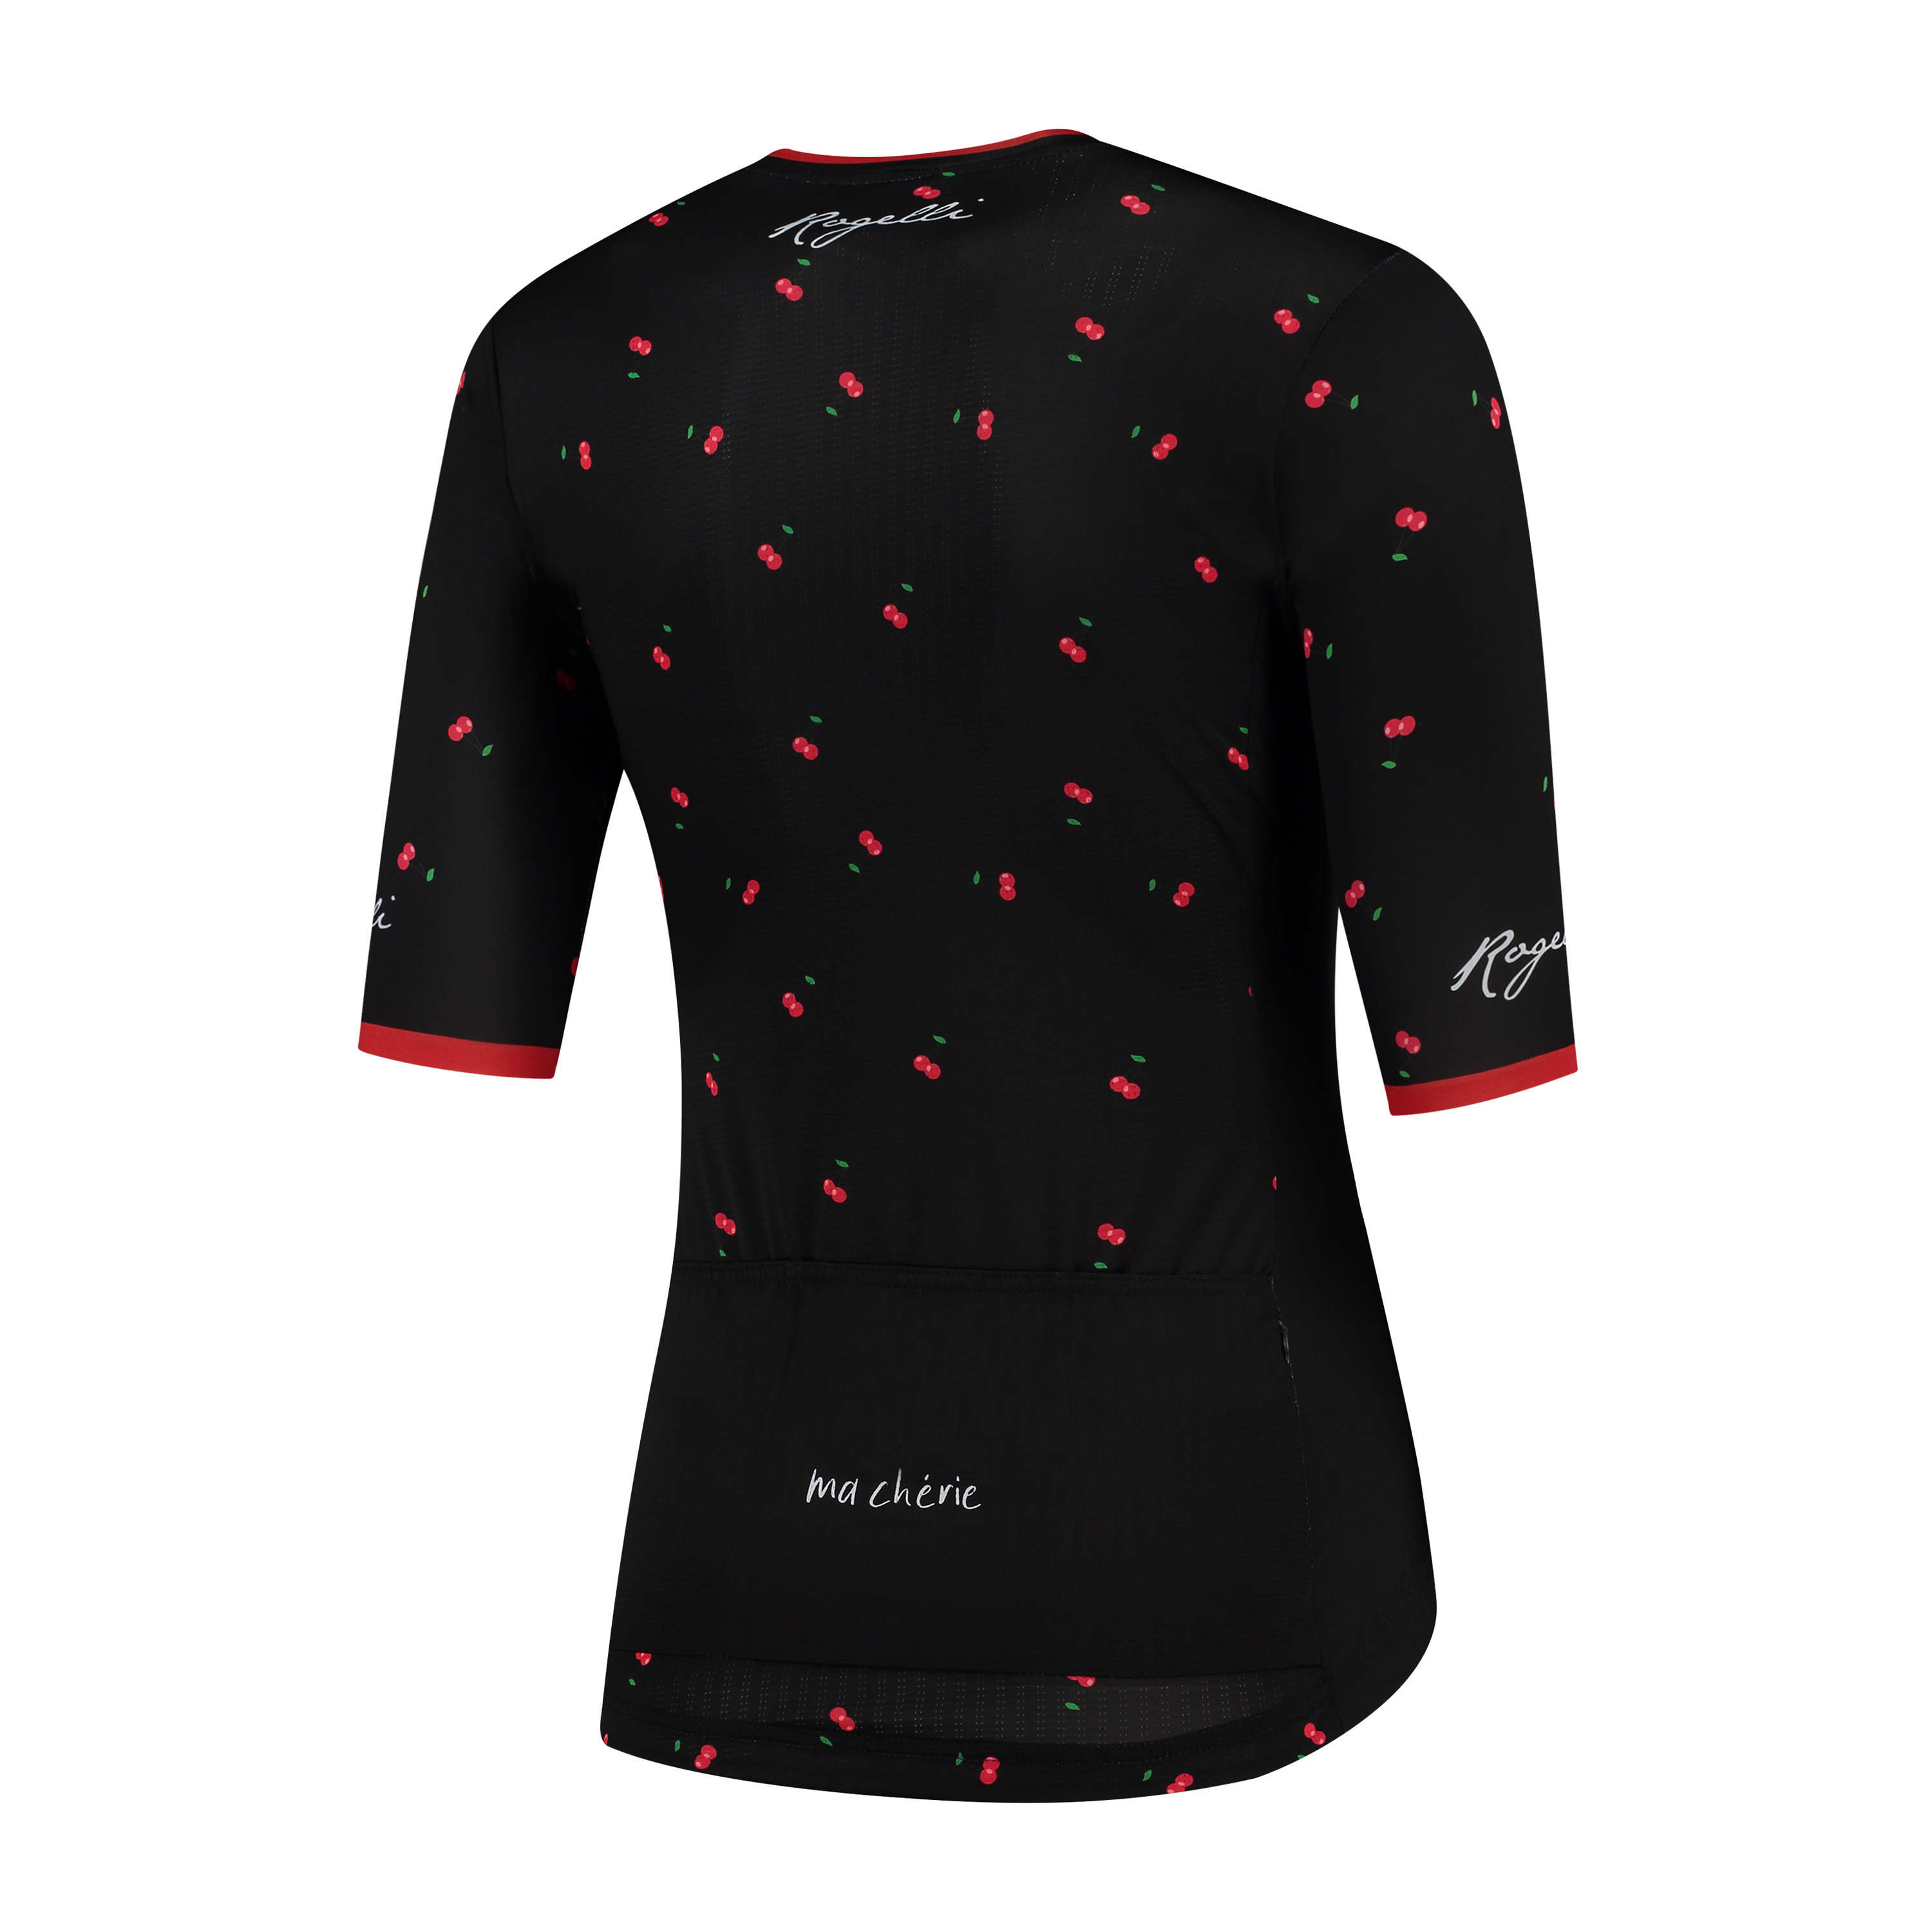 Dames fietsshirt Fruity Zwart/rood